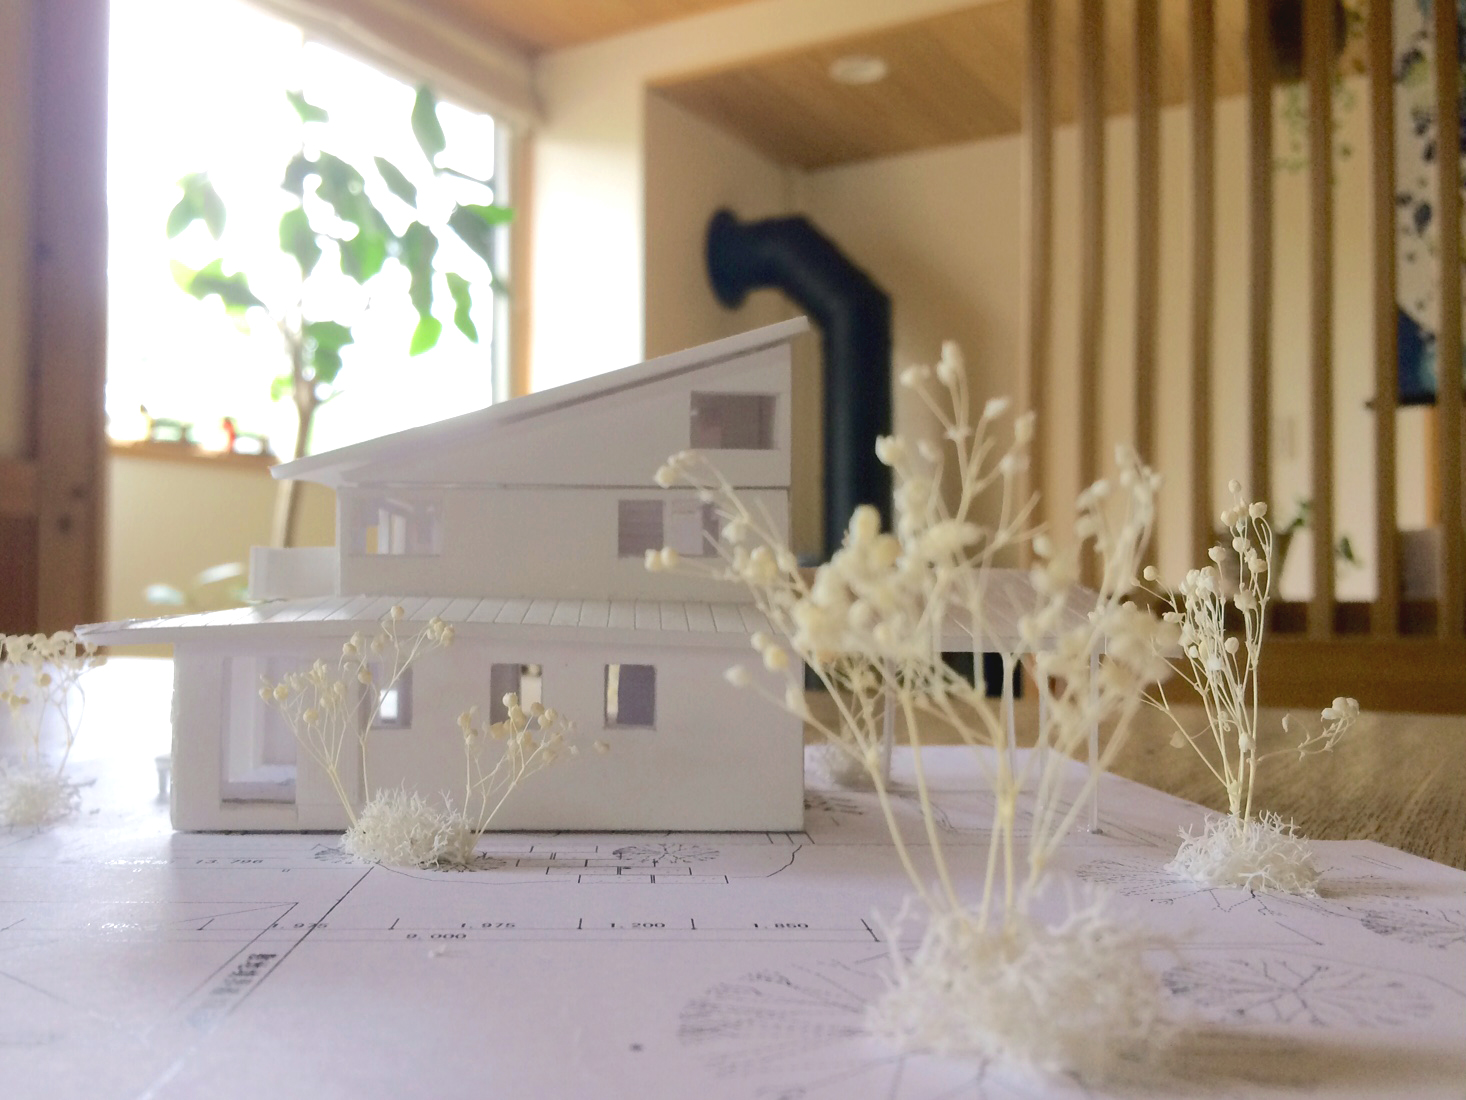 明石市大きな土間のある家の模型.jpg